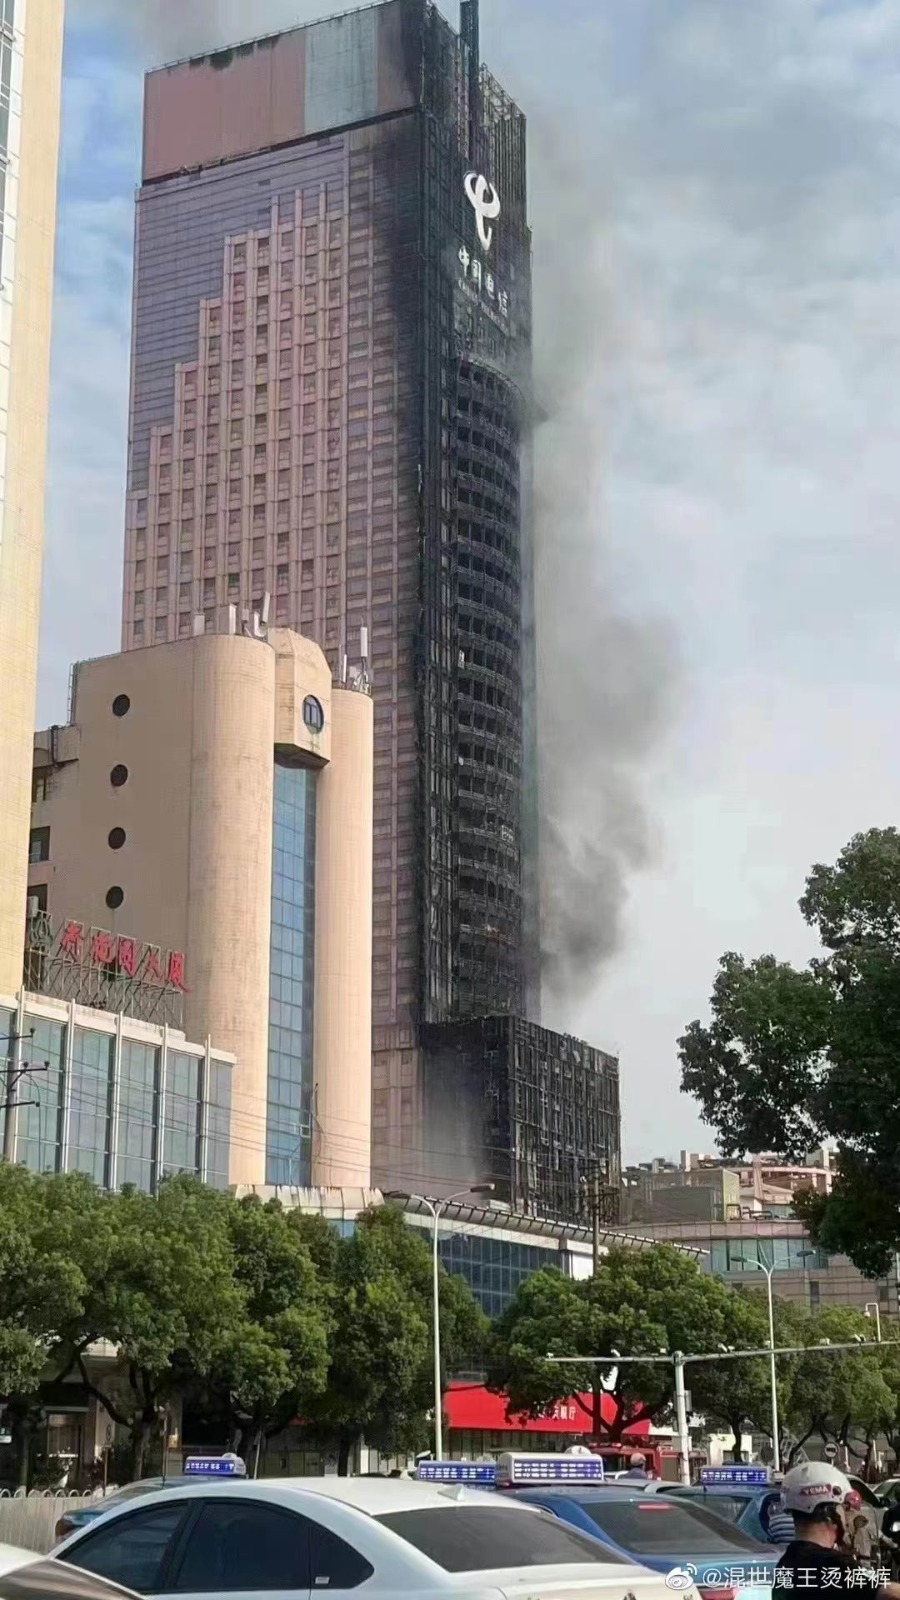  长沙中国电信大楼失火